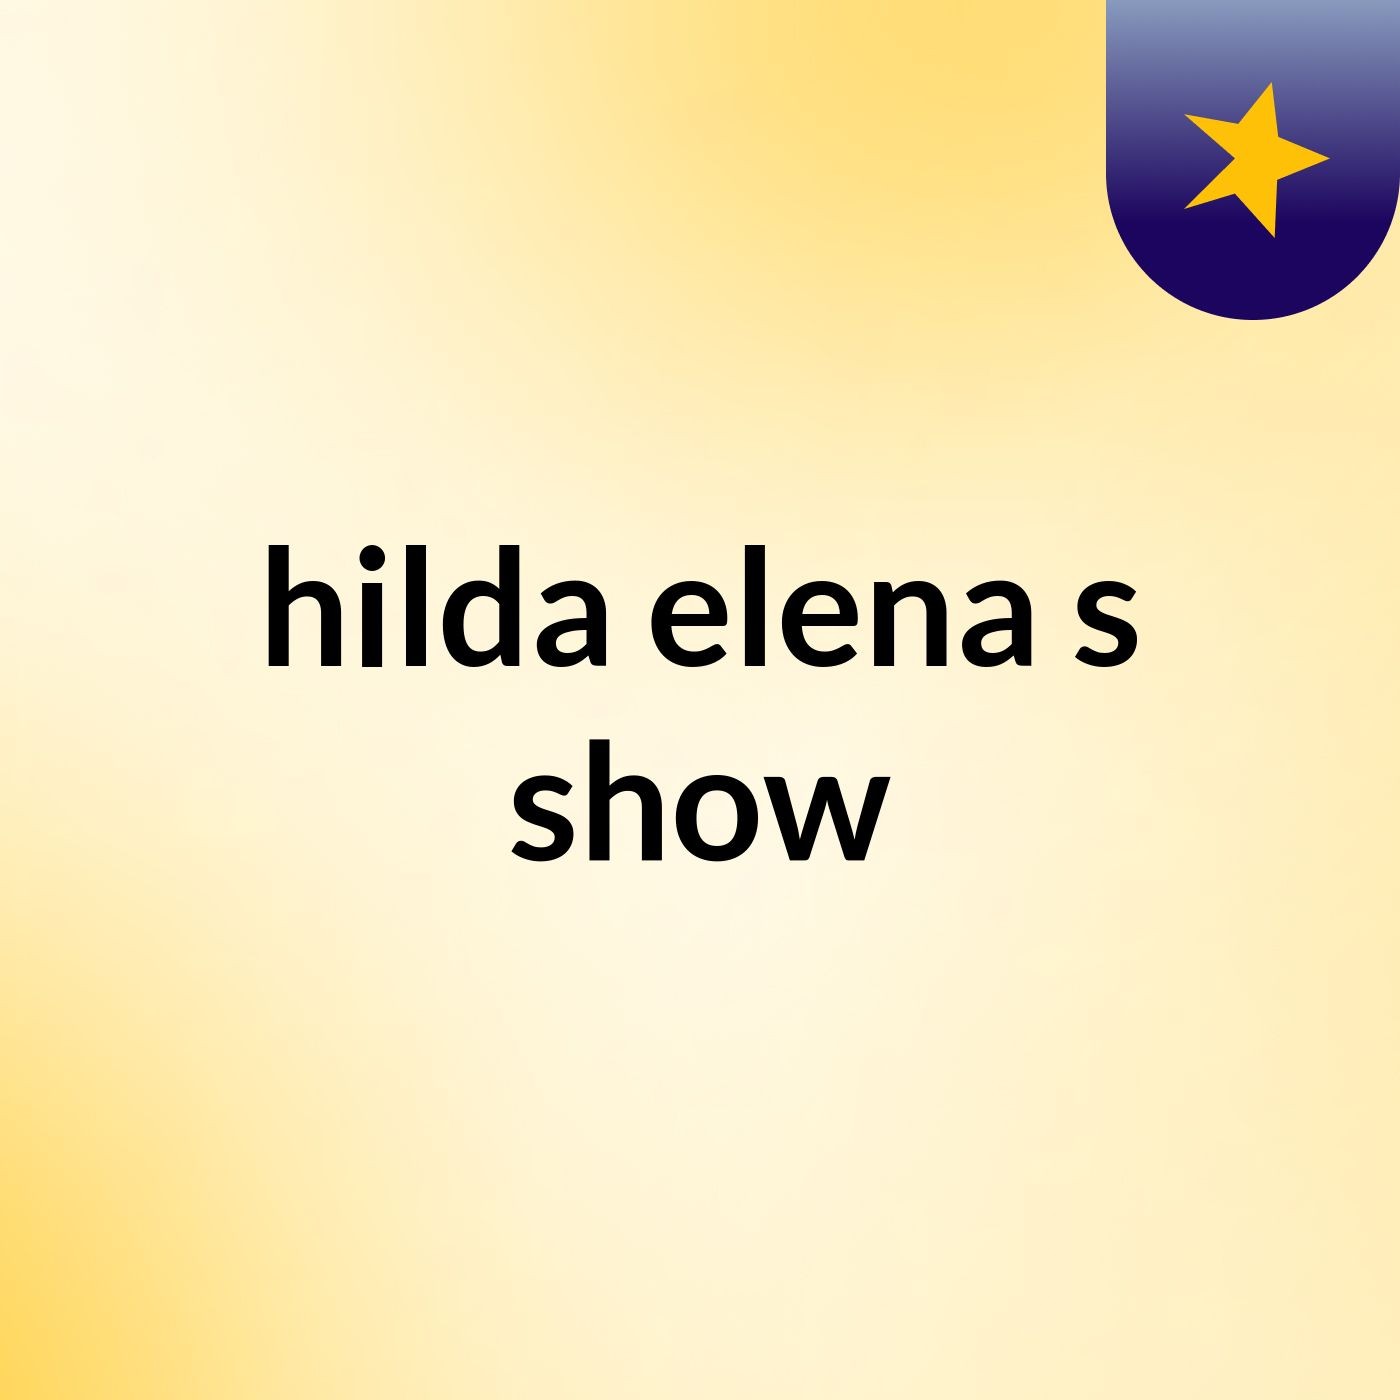 hilda elena's show